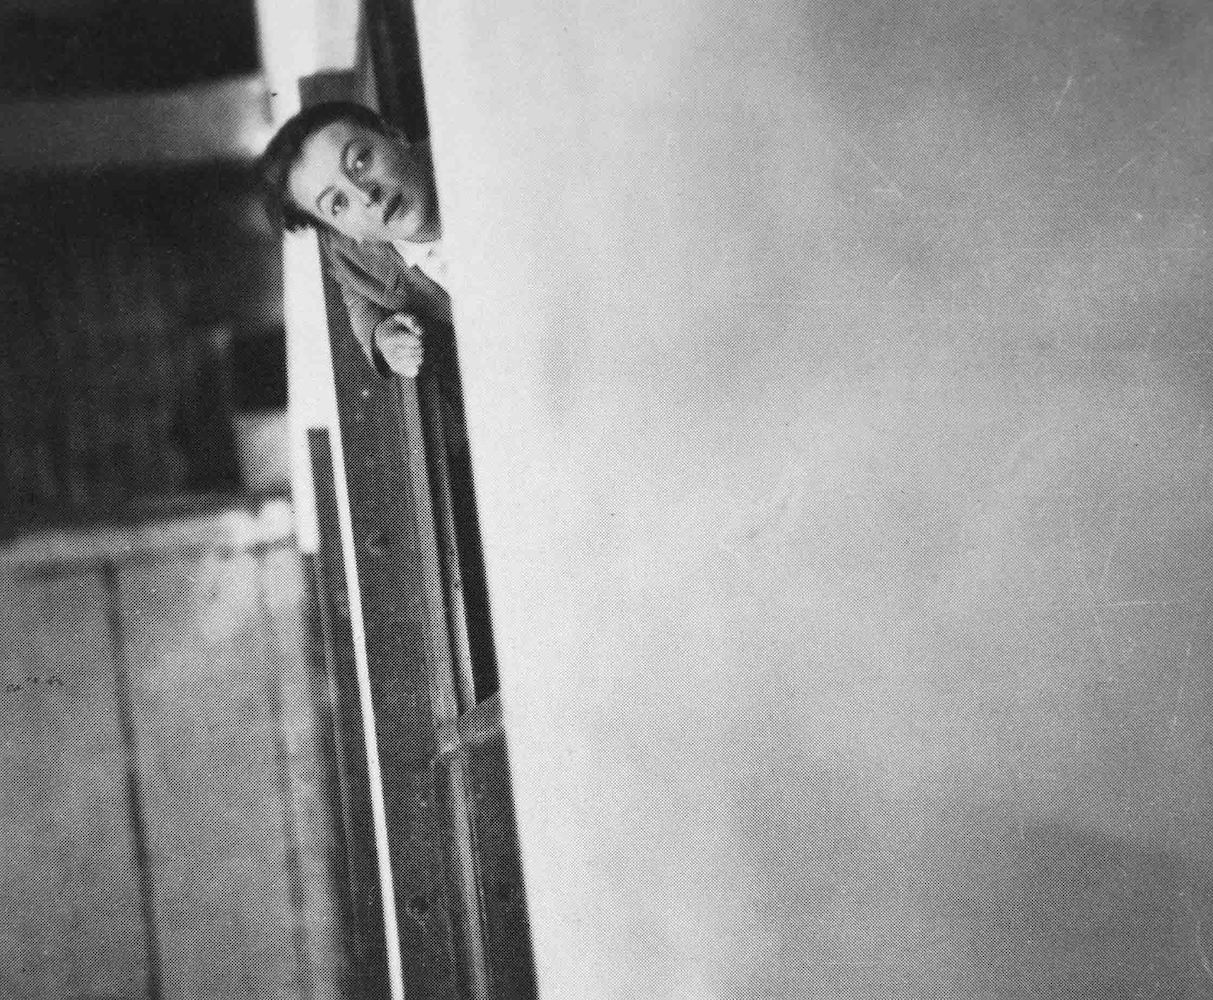 Portrait-Session I. Lis Beyer-Volger blickt aus einem Bauhausfenster nach oben